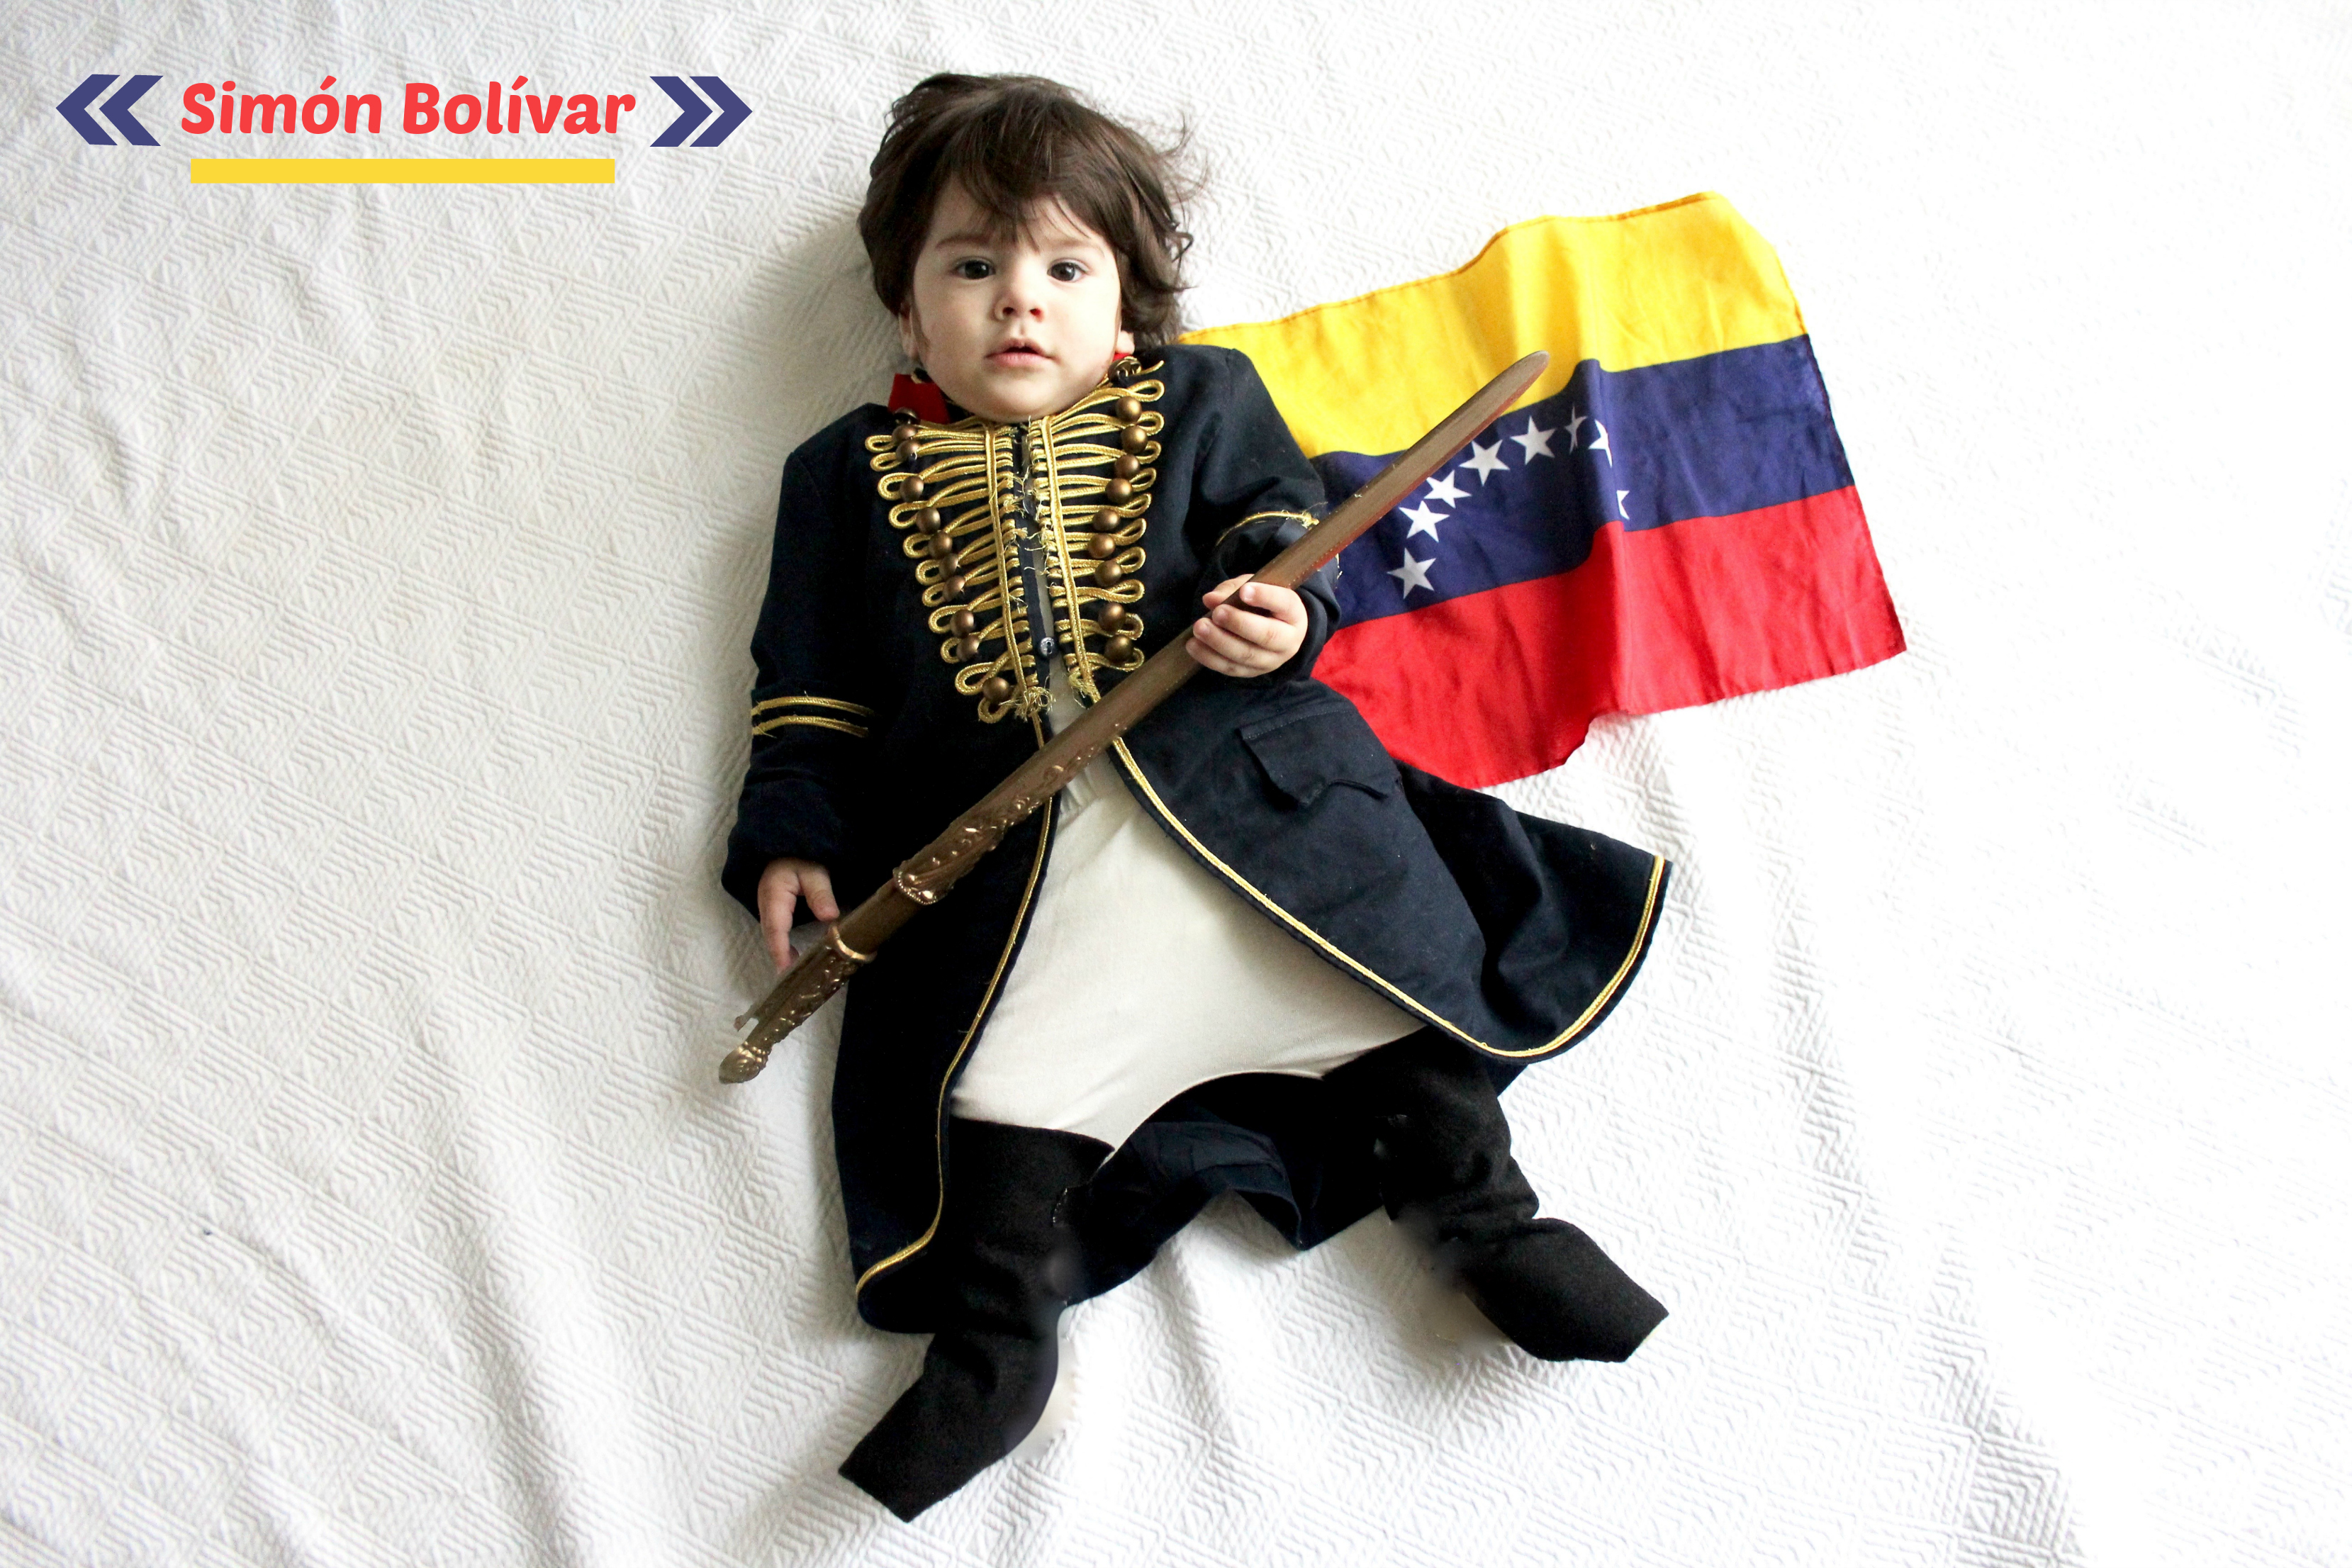 Disfraz Simon Bolivar | criandoando.com